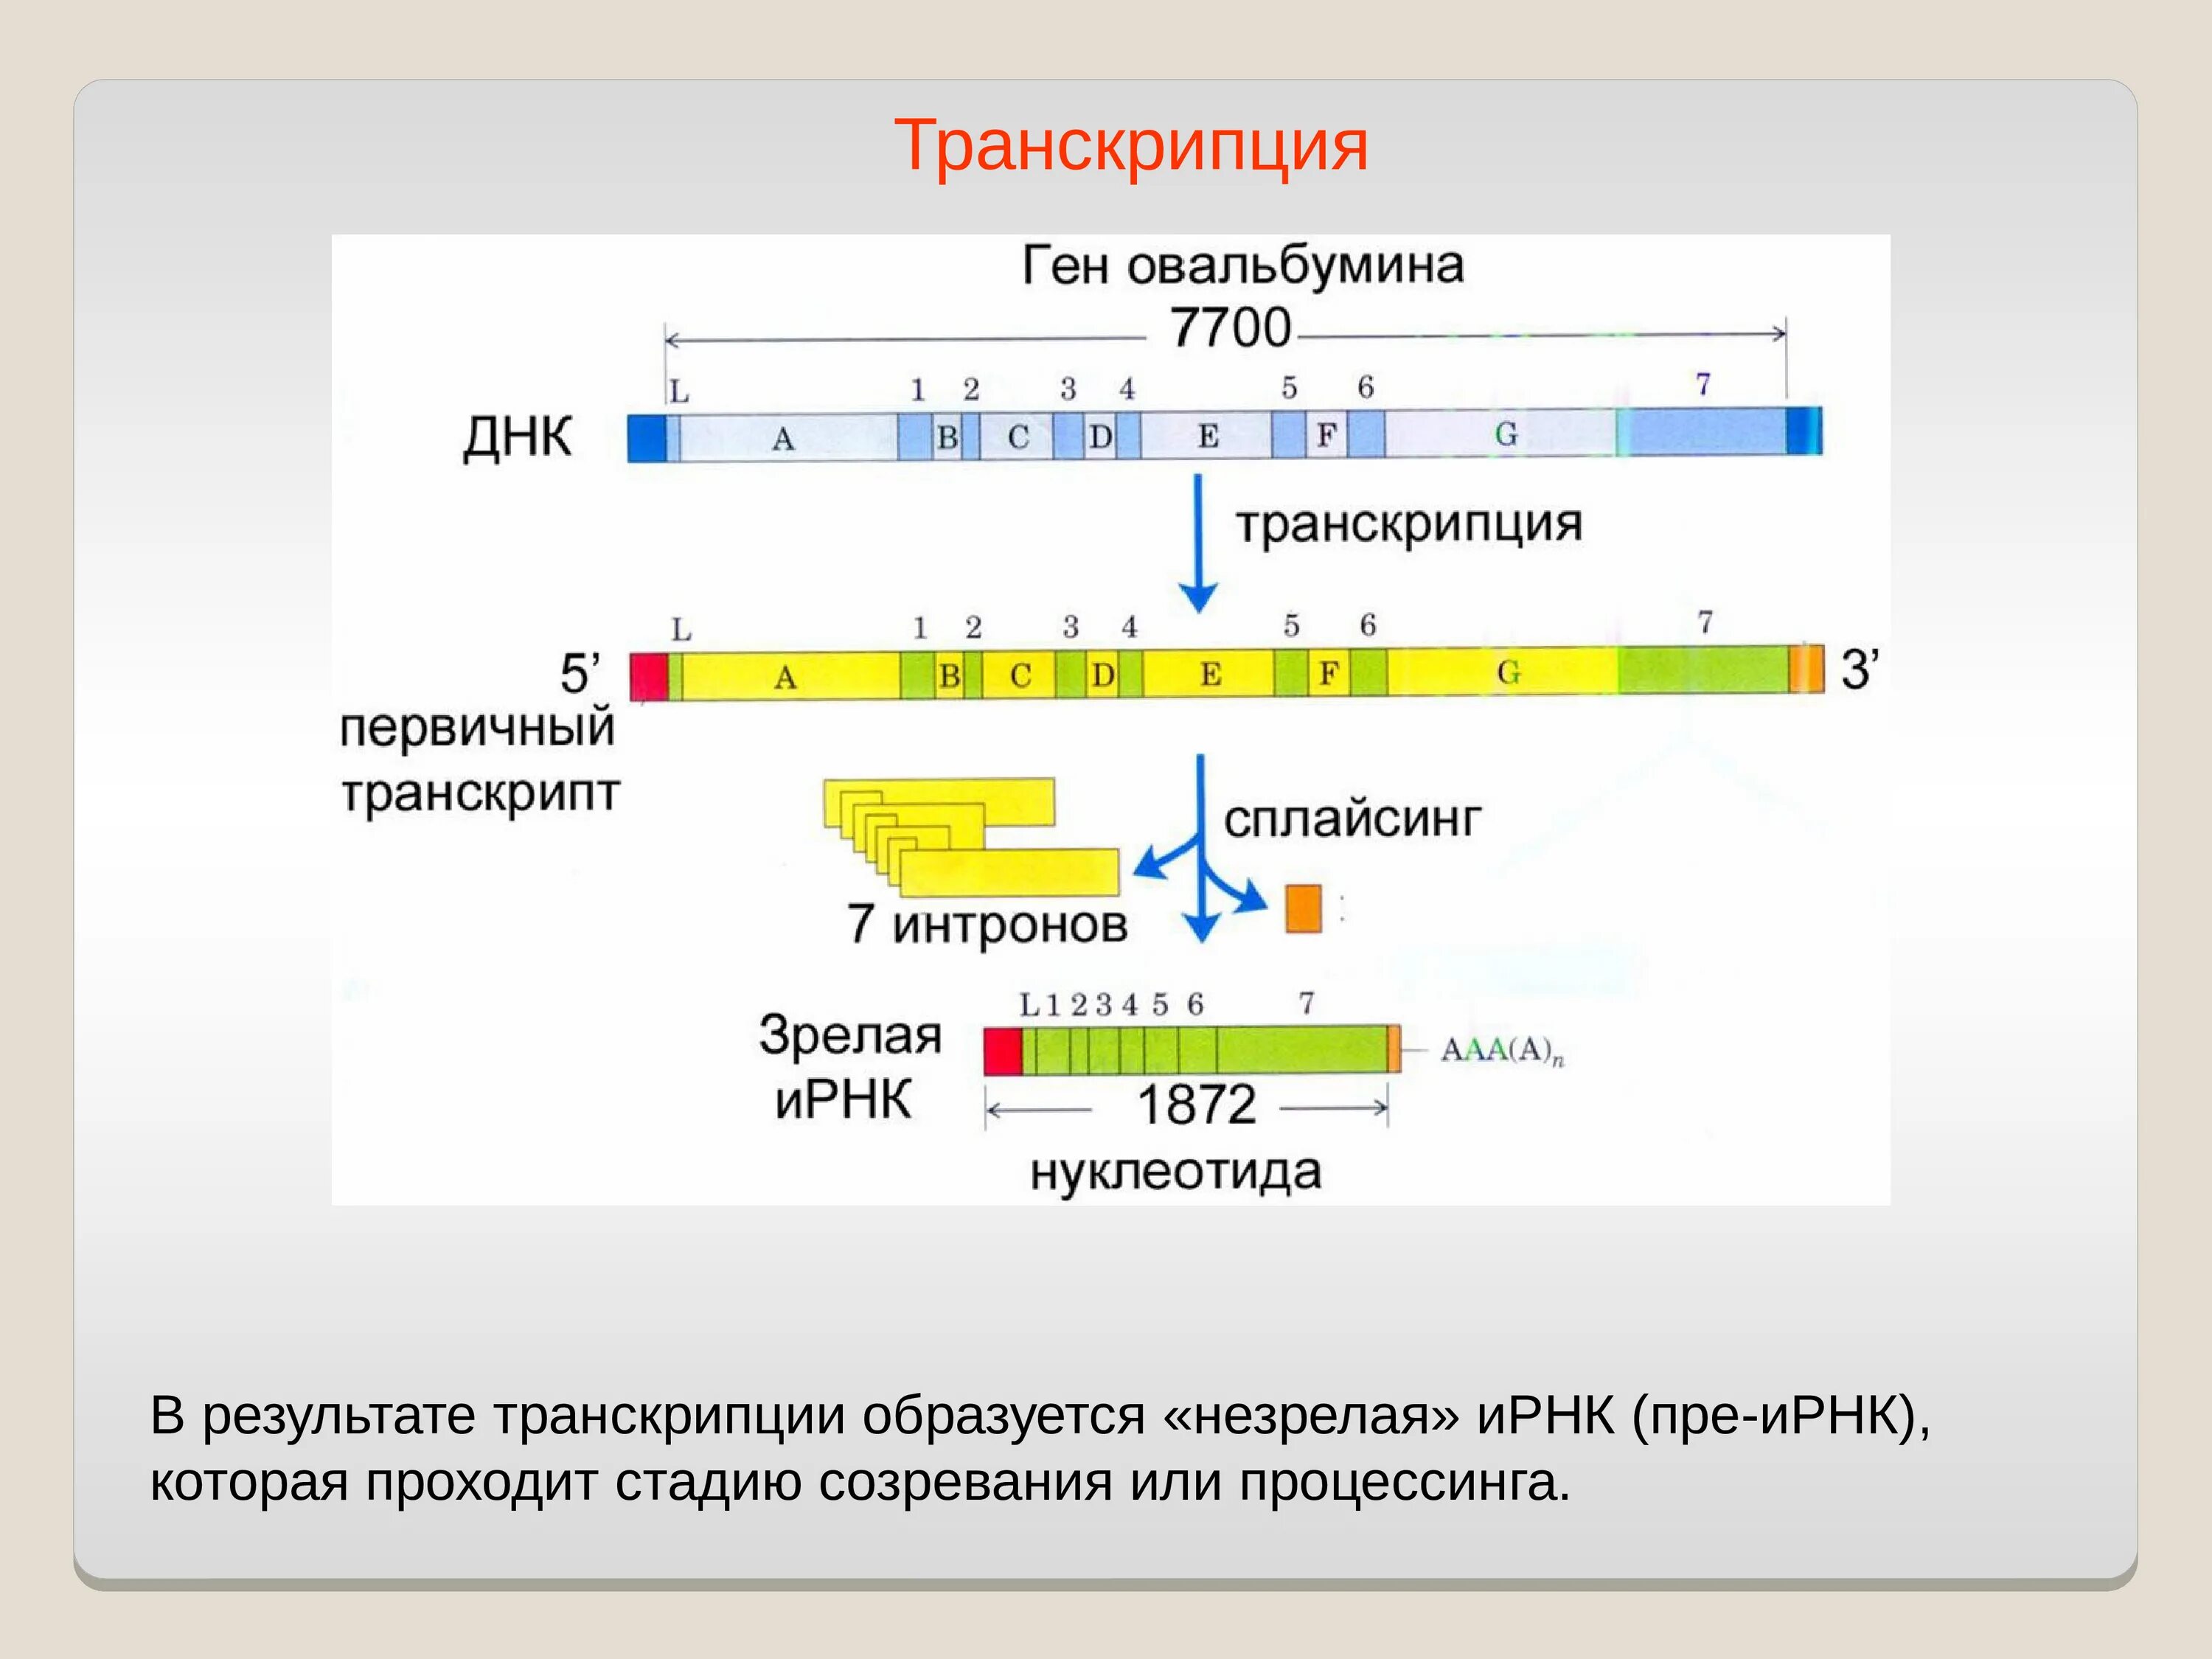 Процессинг РНК этапы. Транскрипция. Транскрипция ДНК. Основной результат транскрипции.